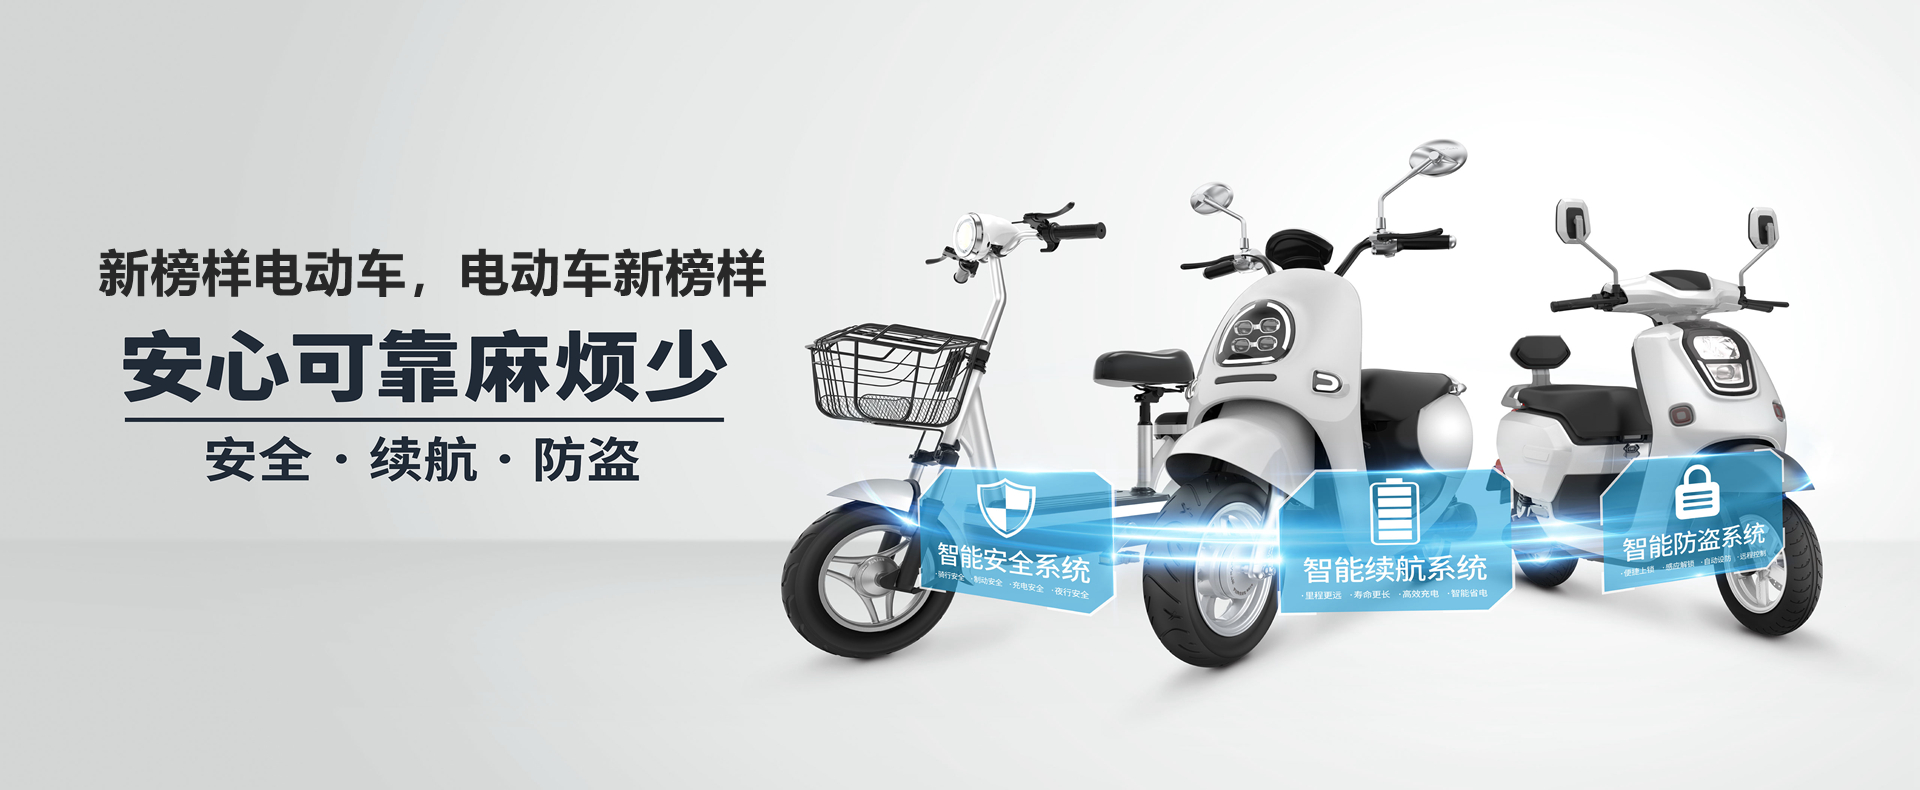 Qiaoshan Industry And Trade-Yongkang Qiaoshan-Citycoco Scooter-Yongkang Qiaoshan Industry And Trade Co., Ltd.